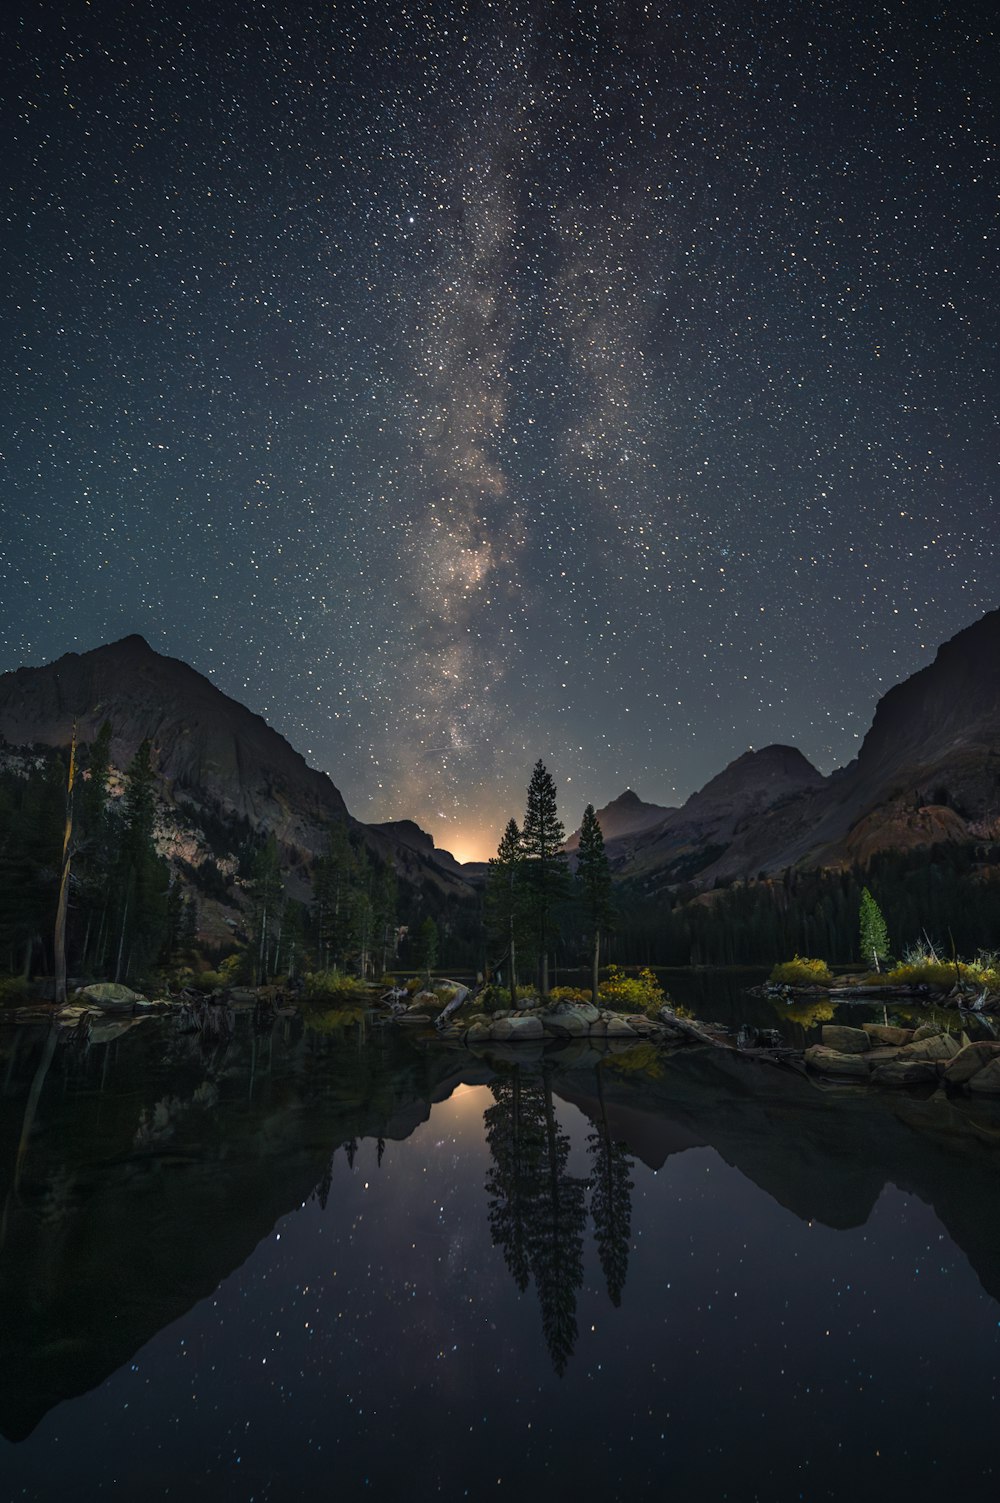 Le ciel nocturne se reflète dans l’eau calme d’un lac de montagne